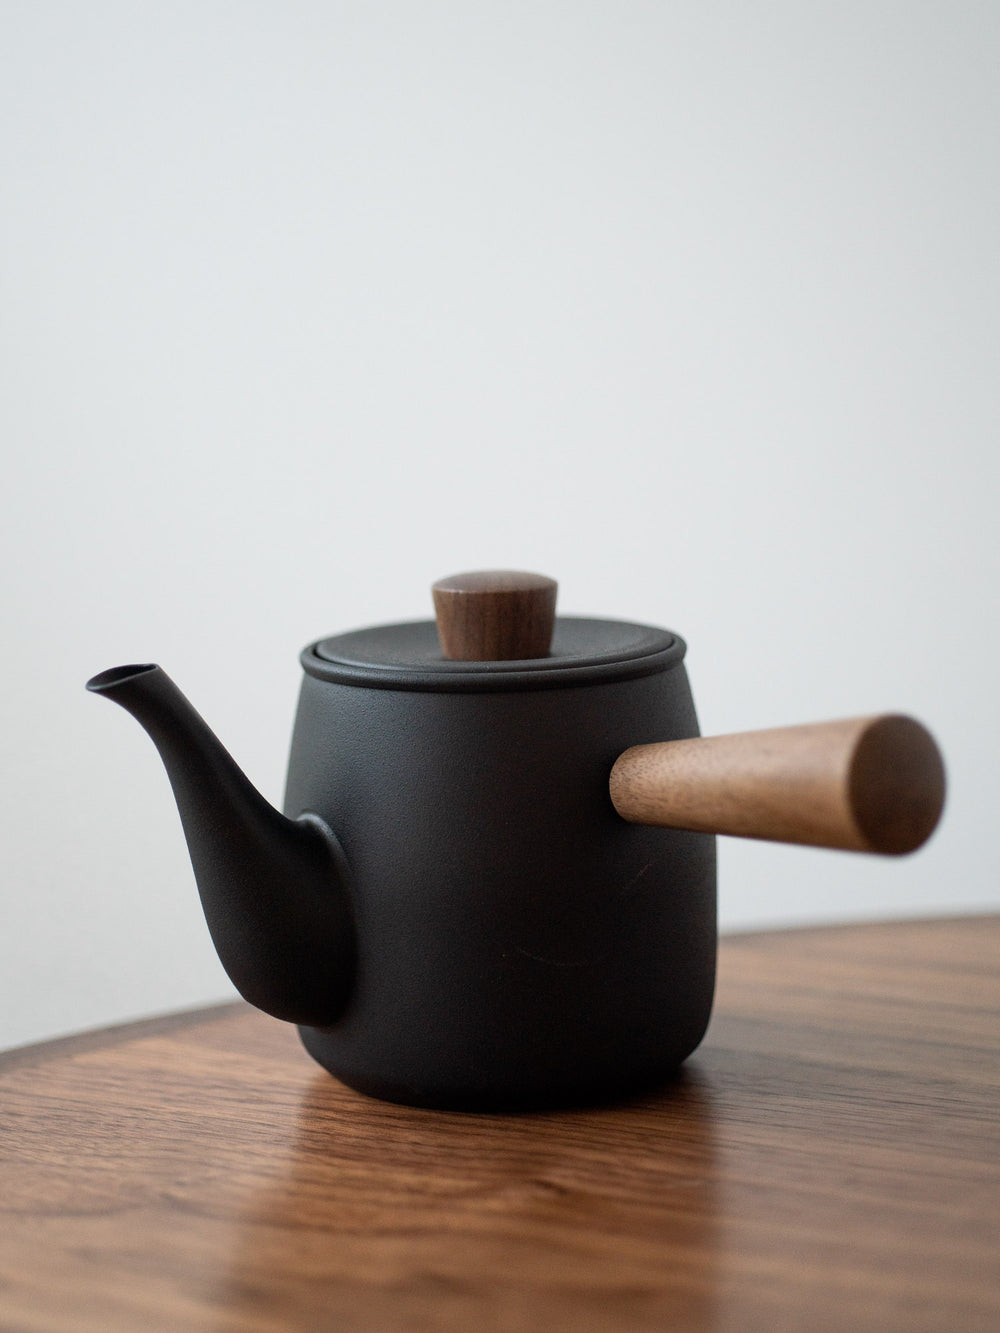 Chaki Stainless Teapot Black – S